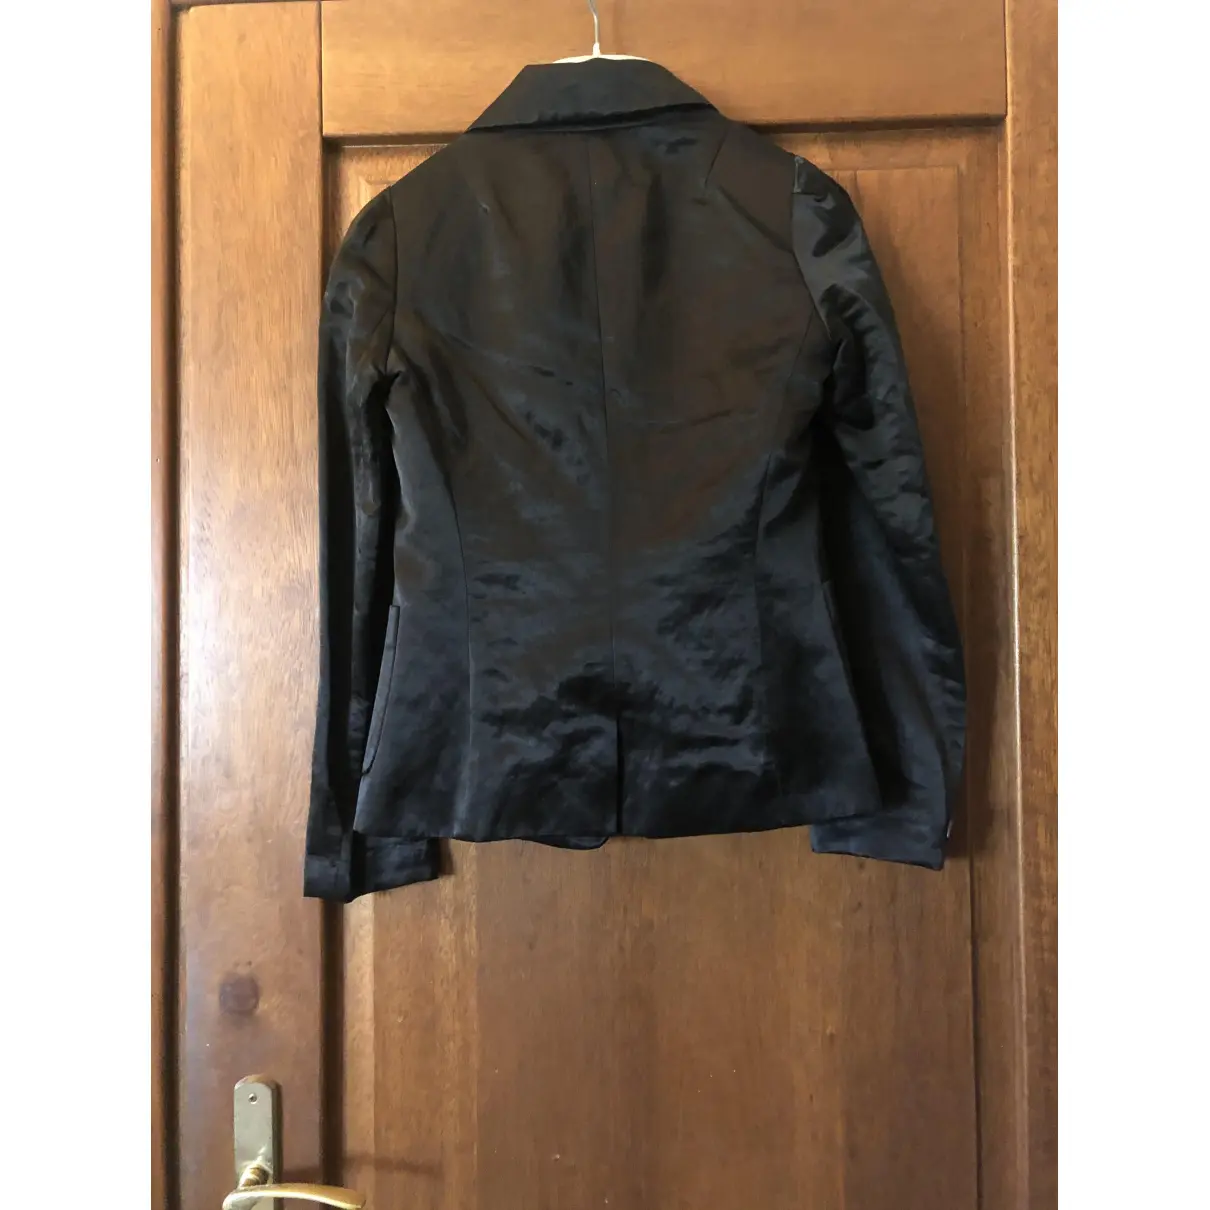 Buy Liu.Jo Black Synthetic Jacket online